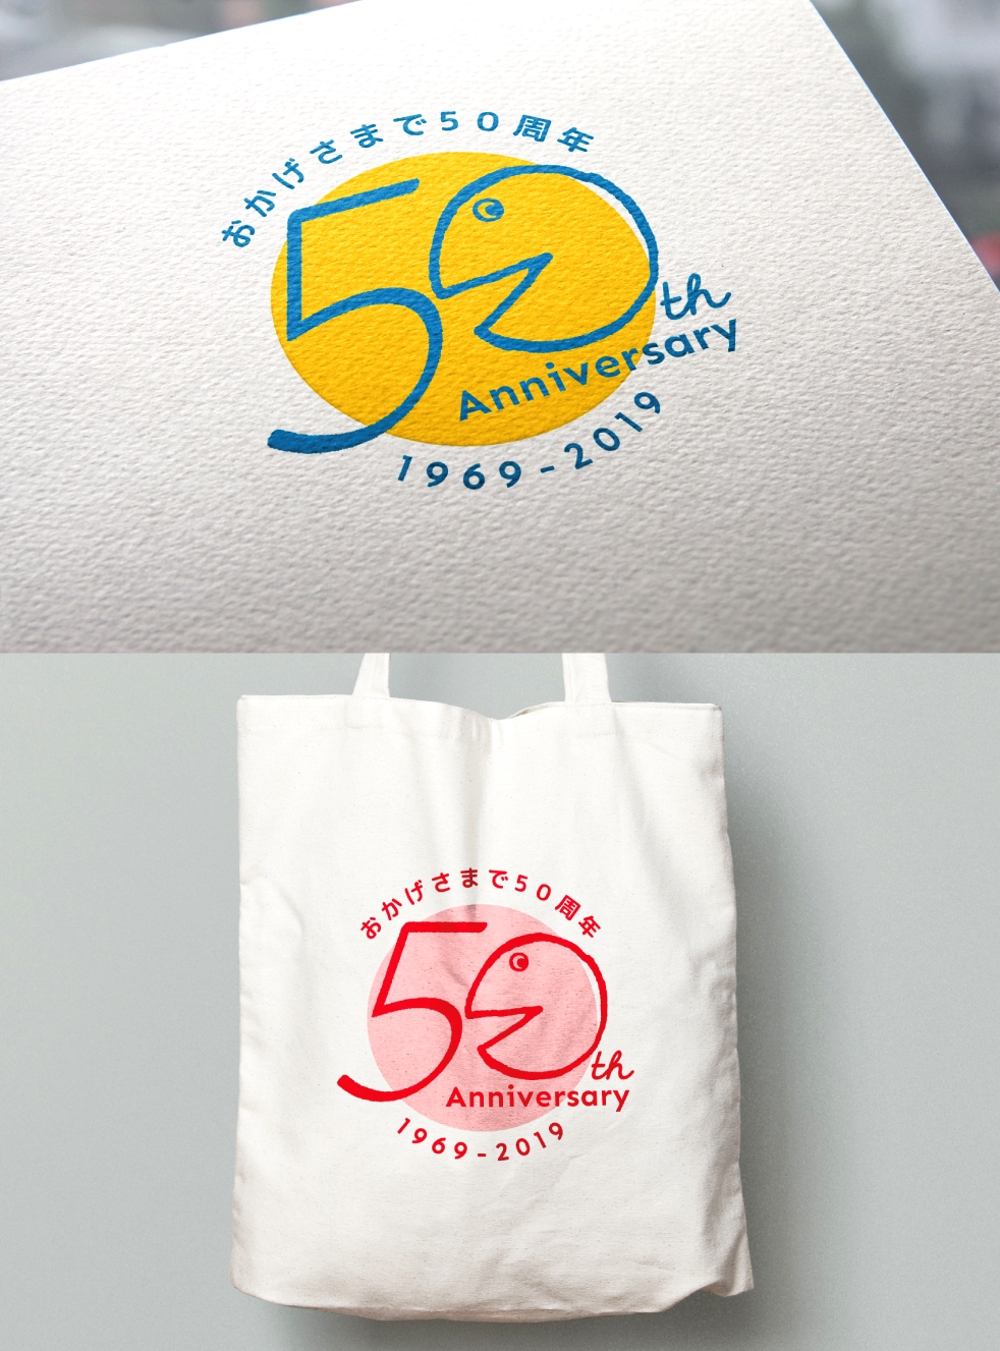 創立50周年　周年記念のロゴ